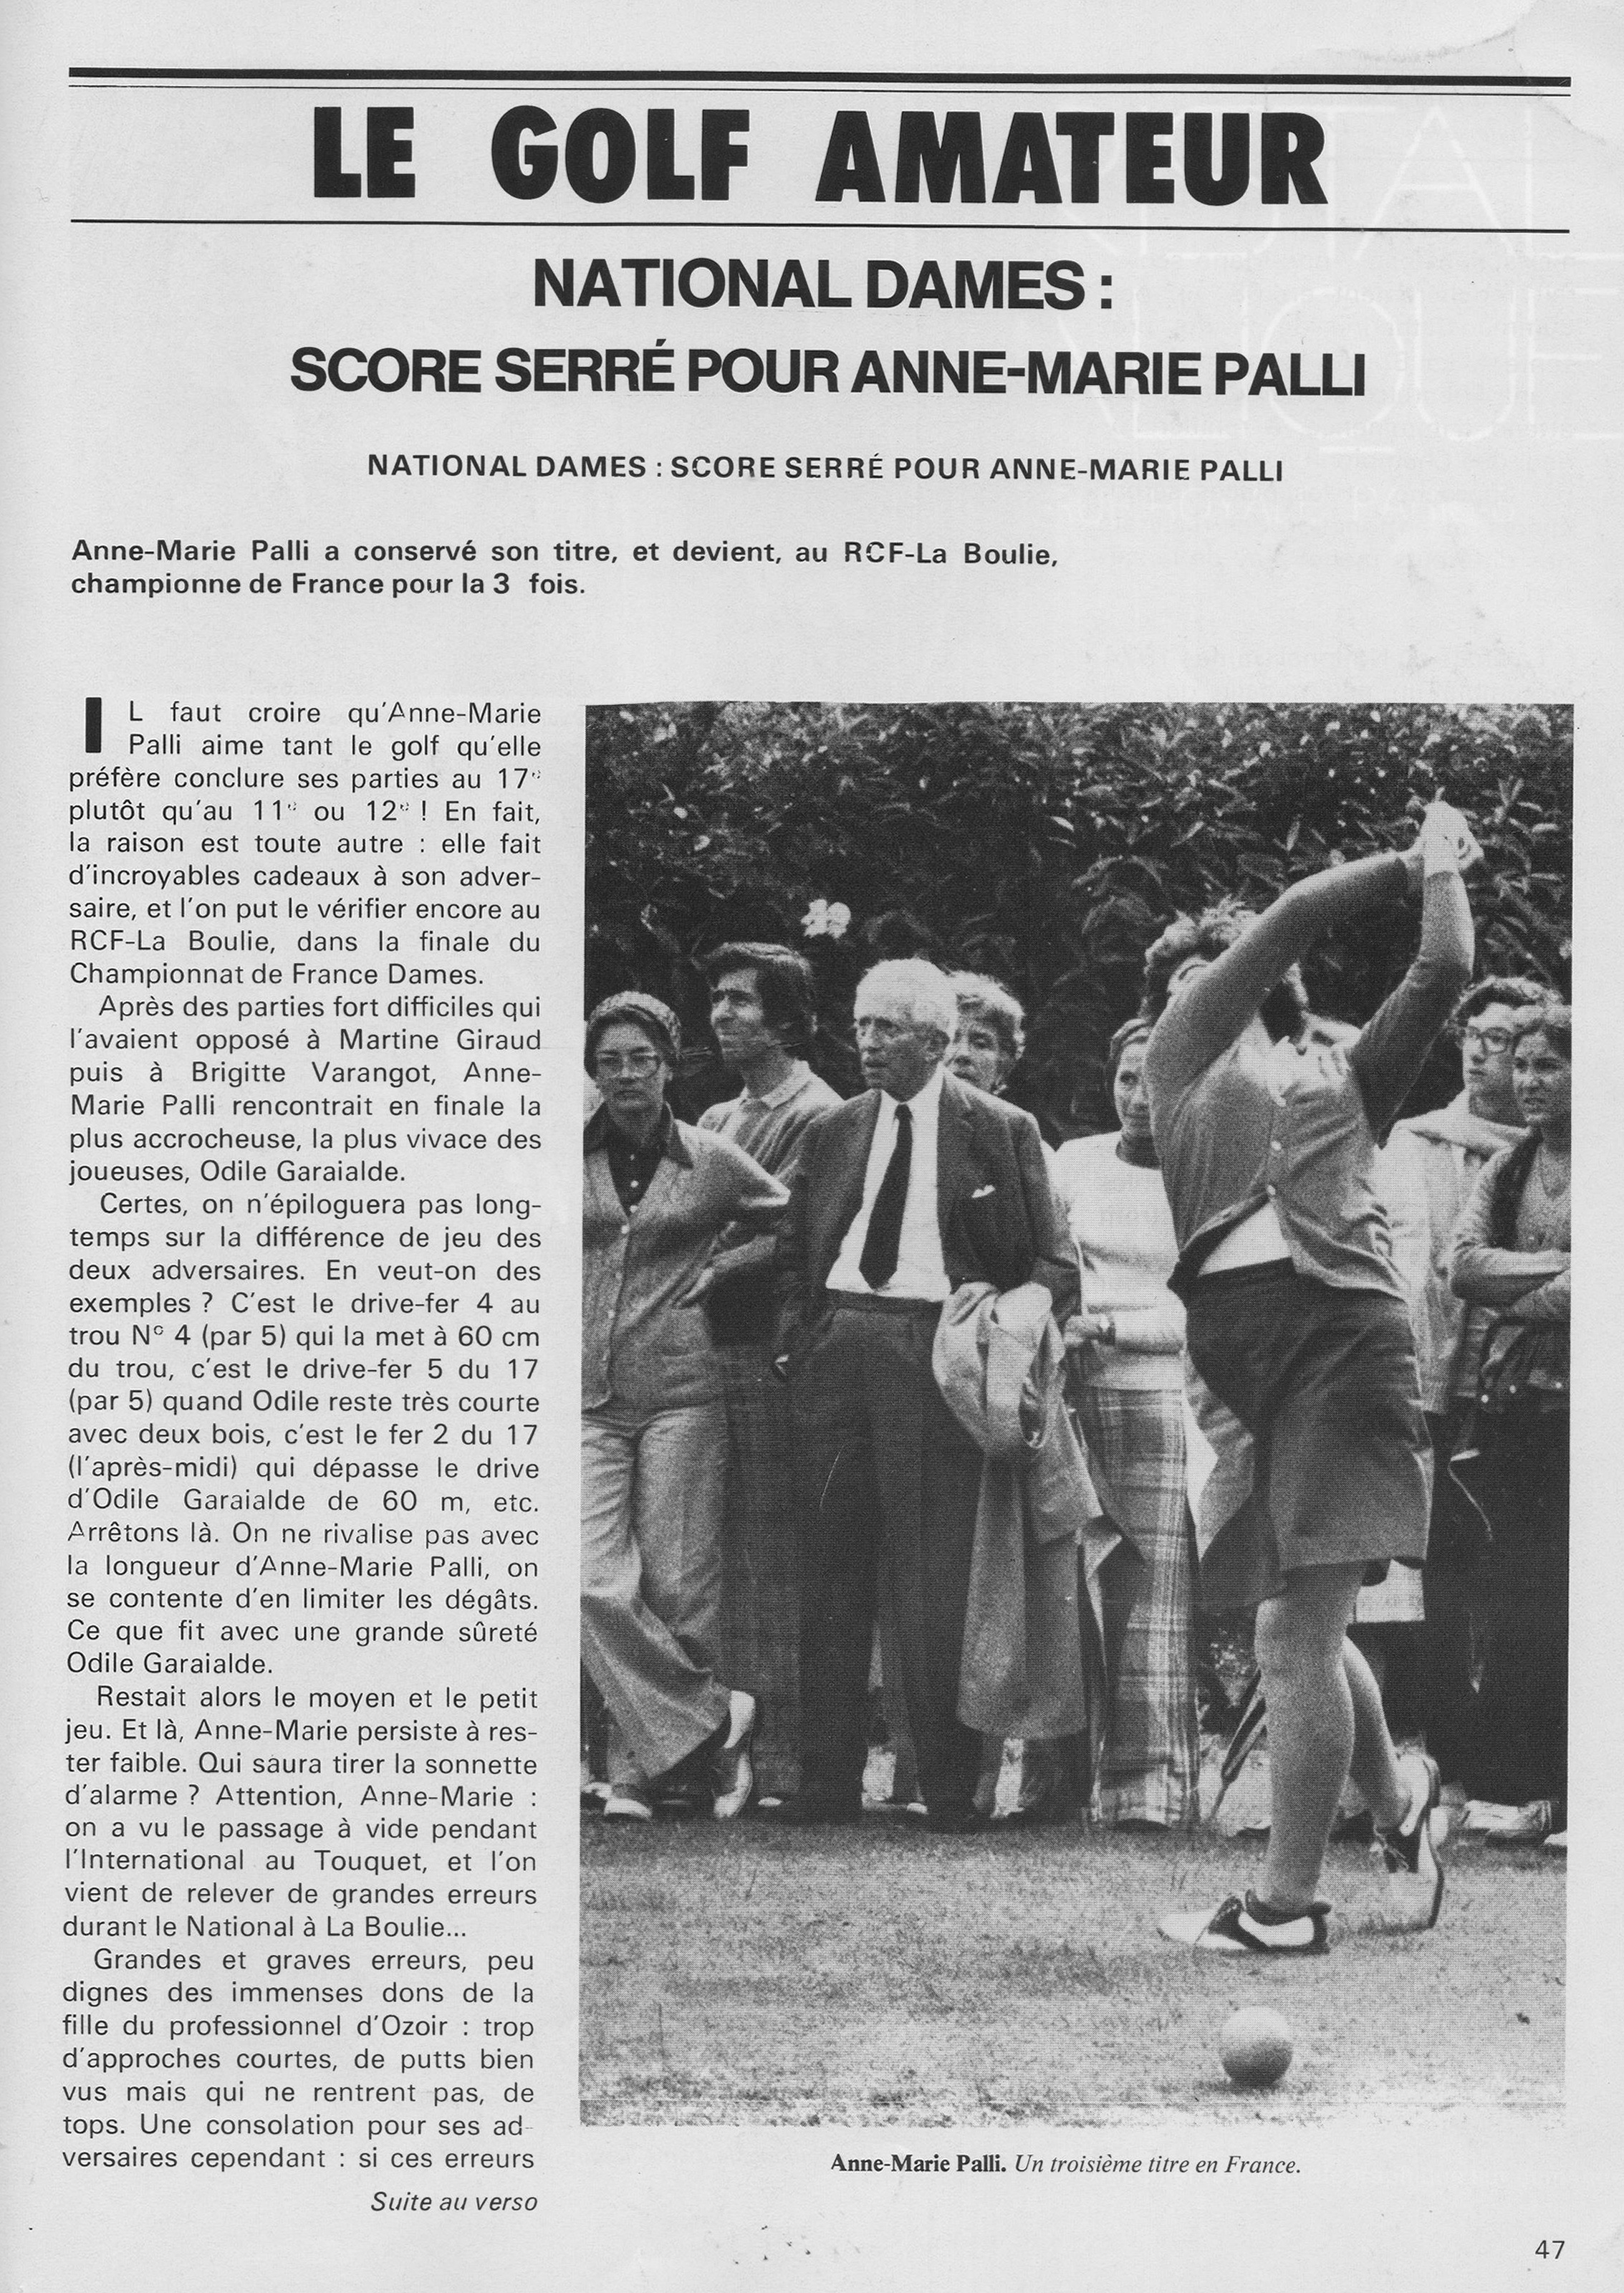 Anne Marie Palli Championne de France pour la 3me fois en 1974